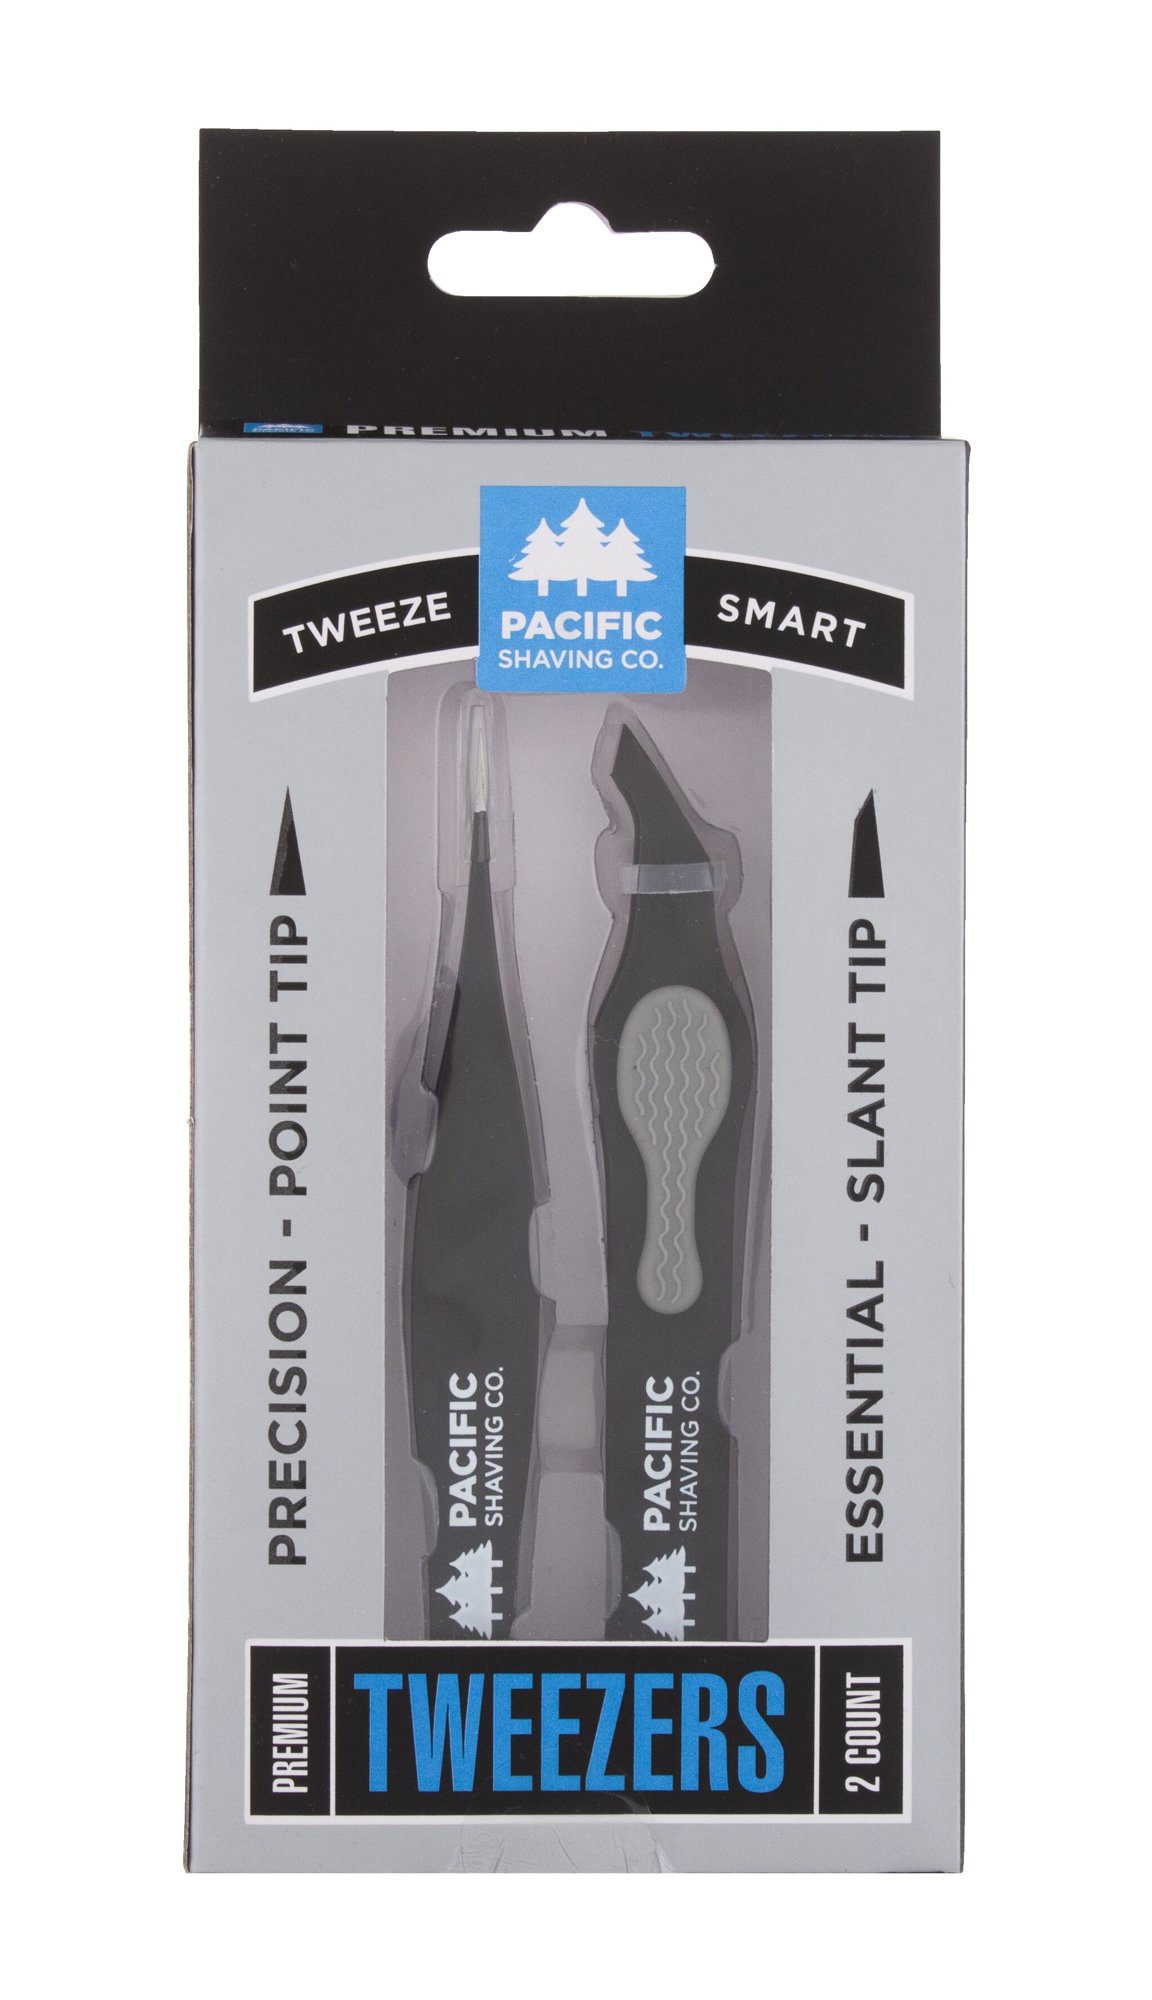 Pacific Shaving Co. Tweeze Smart Premium Tweezers pincetas